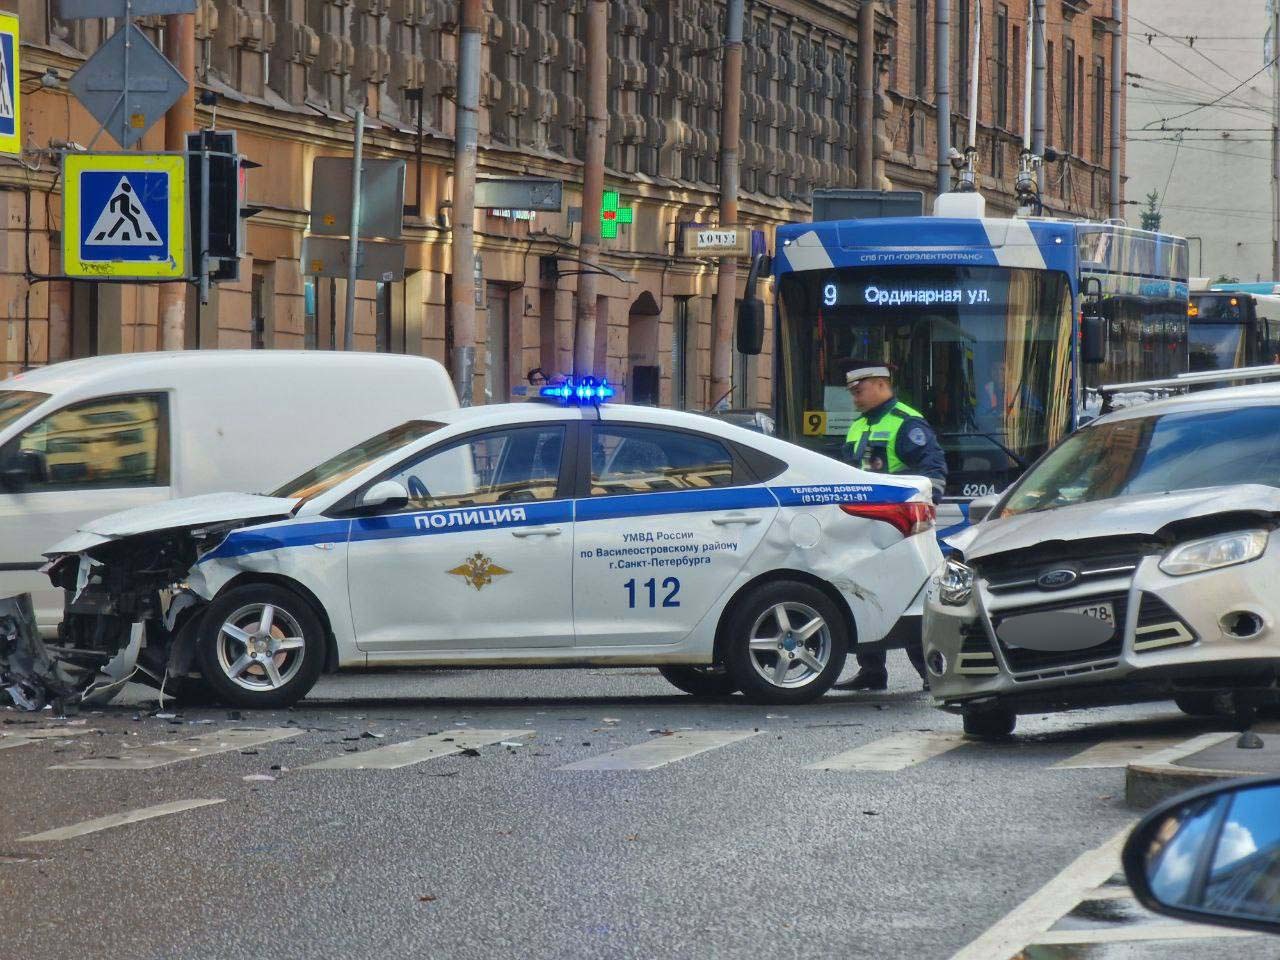 Полиция разбилась. Полицейская машина. Машина "полиция". Полицейские машины Санкт-Петербурга. Разбитые полицейские машины.